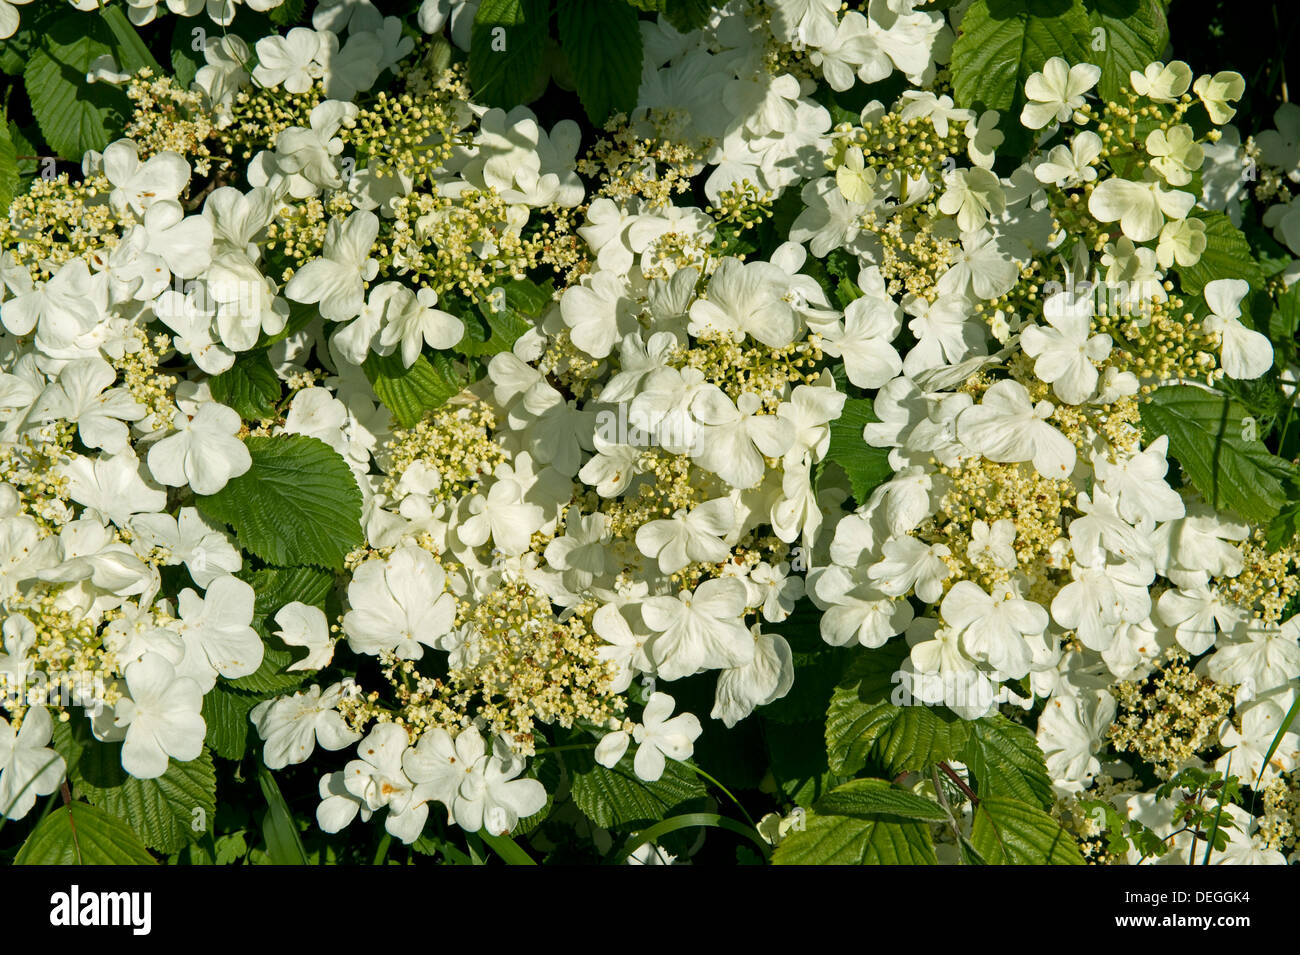 Boule de neige Viburnum plicatum japonais, f tomentosum, fleurs blanches sur l'arbuste jardin ornemental Banque D'Images